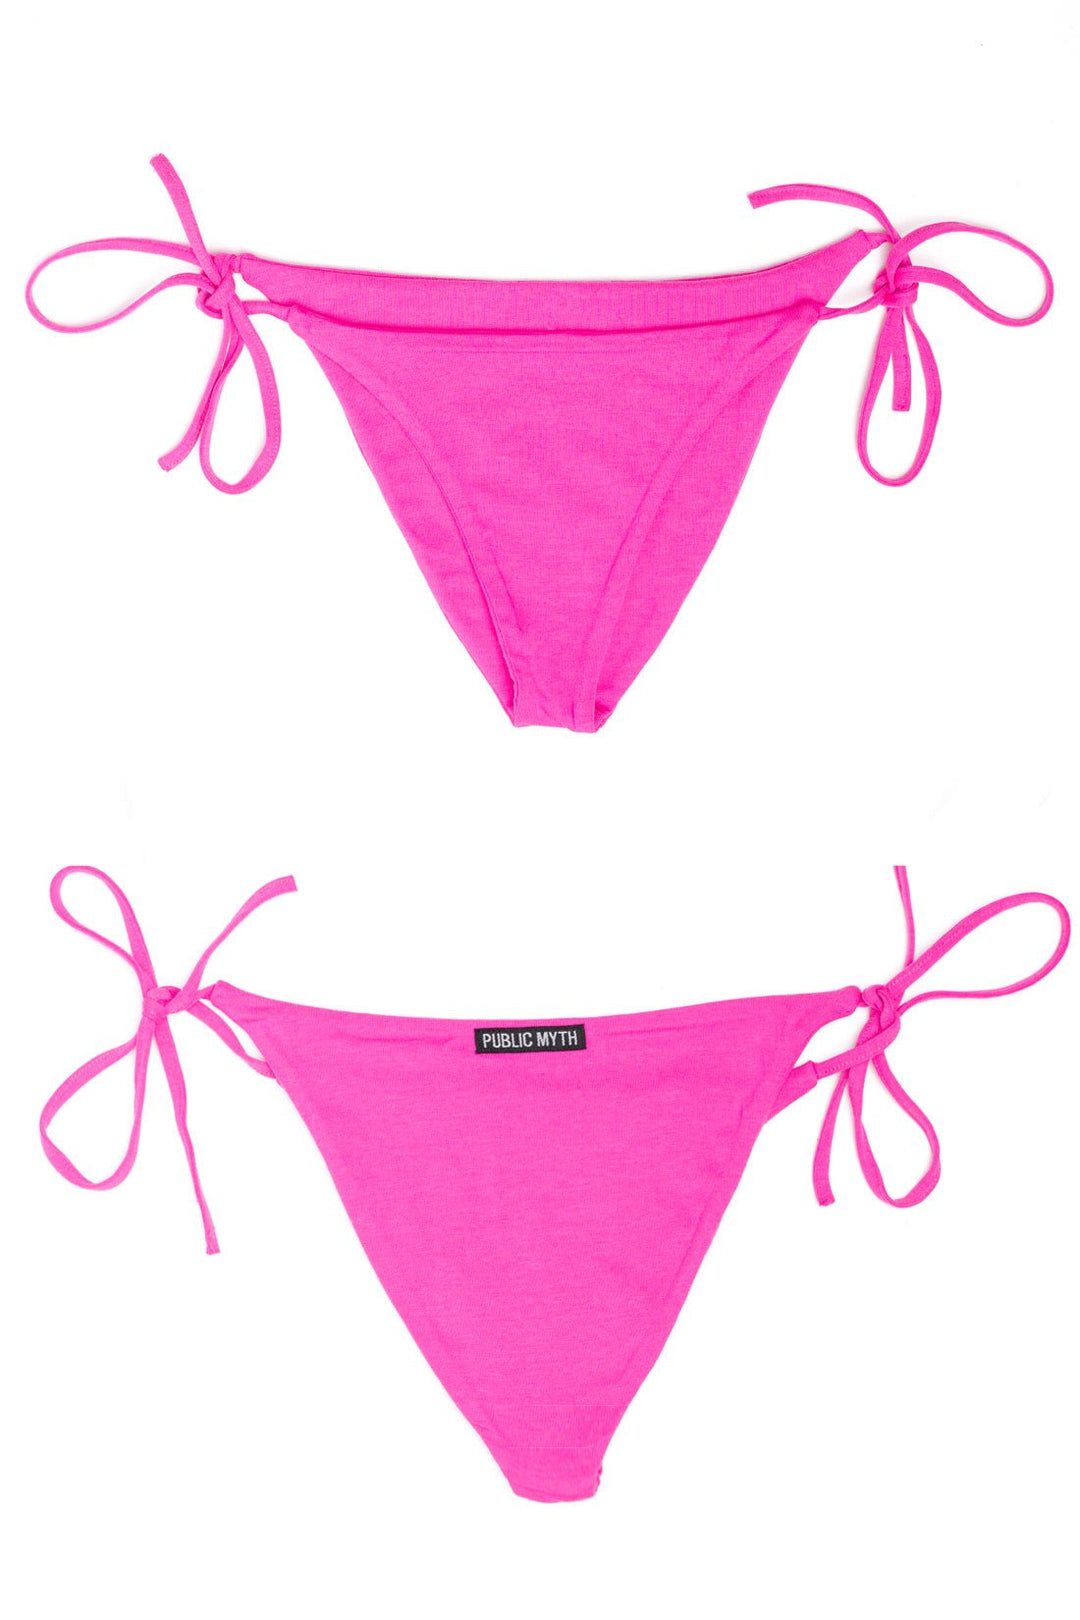 hot pink bikini bottom